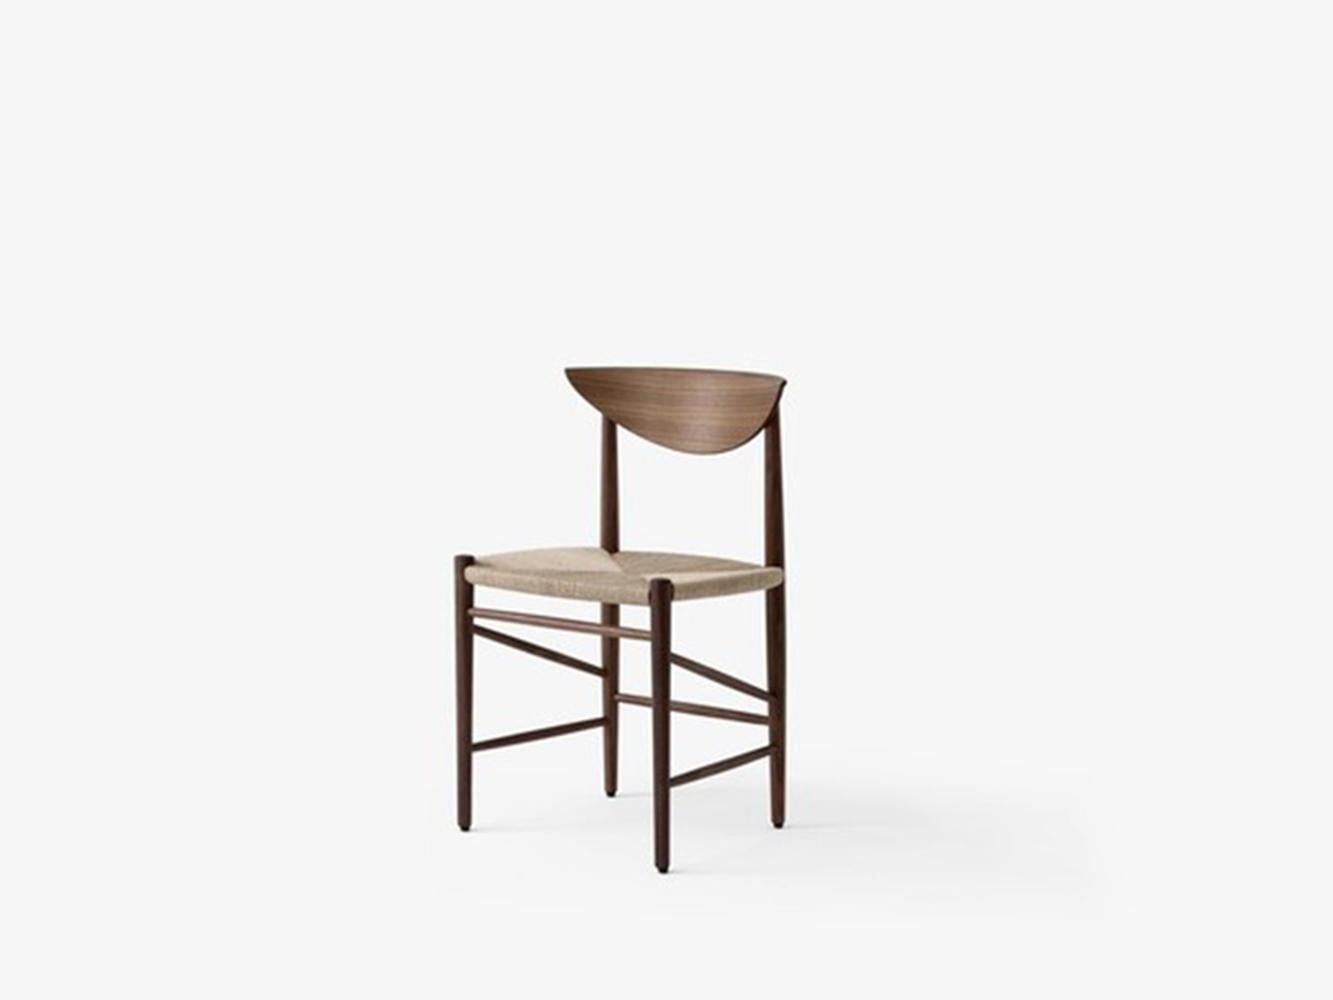 La chaise Drawn 1956 de Hvidt & Mølgaard est une pièce maîtresse du design danois.
S'appuyant sur des techniques artisanales traditionnelles et construit à partir de matériaux organiques, il apporte un sentiment d'honnêteté saine à tout espace.
La